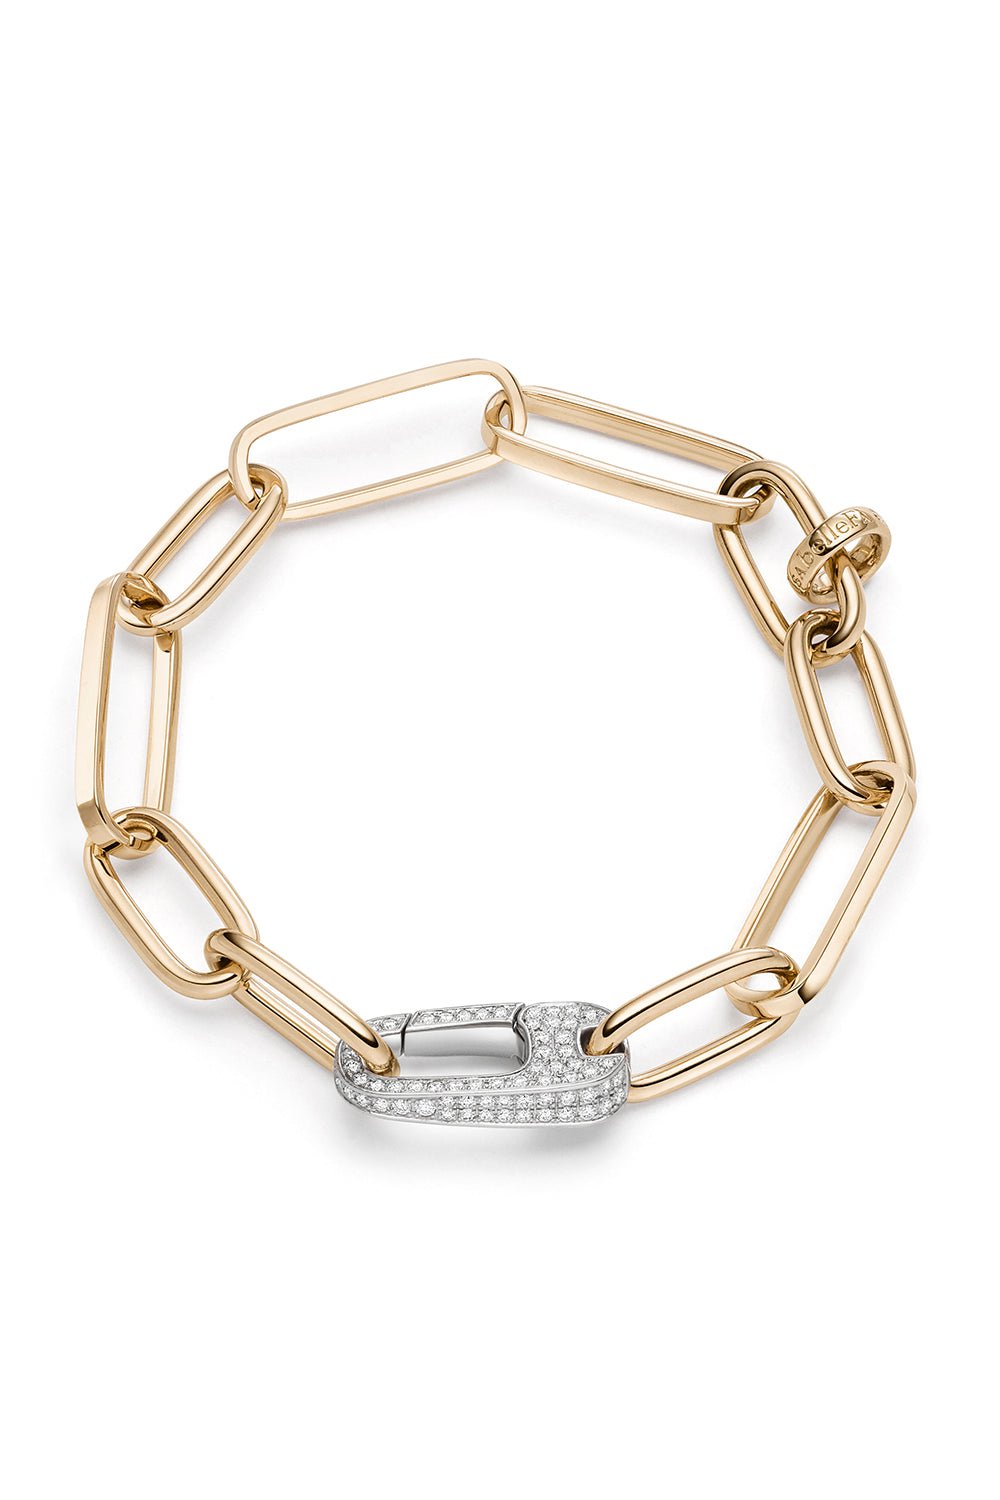 Coquette Bracelet – Marissa Collections